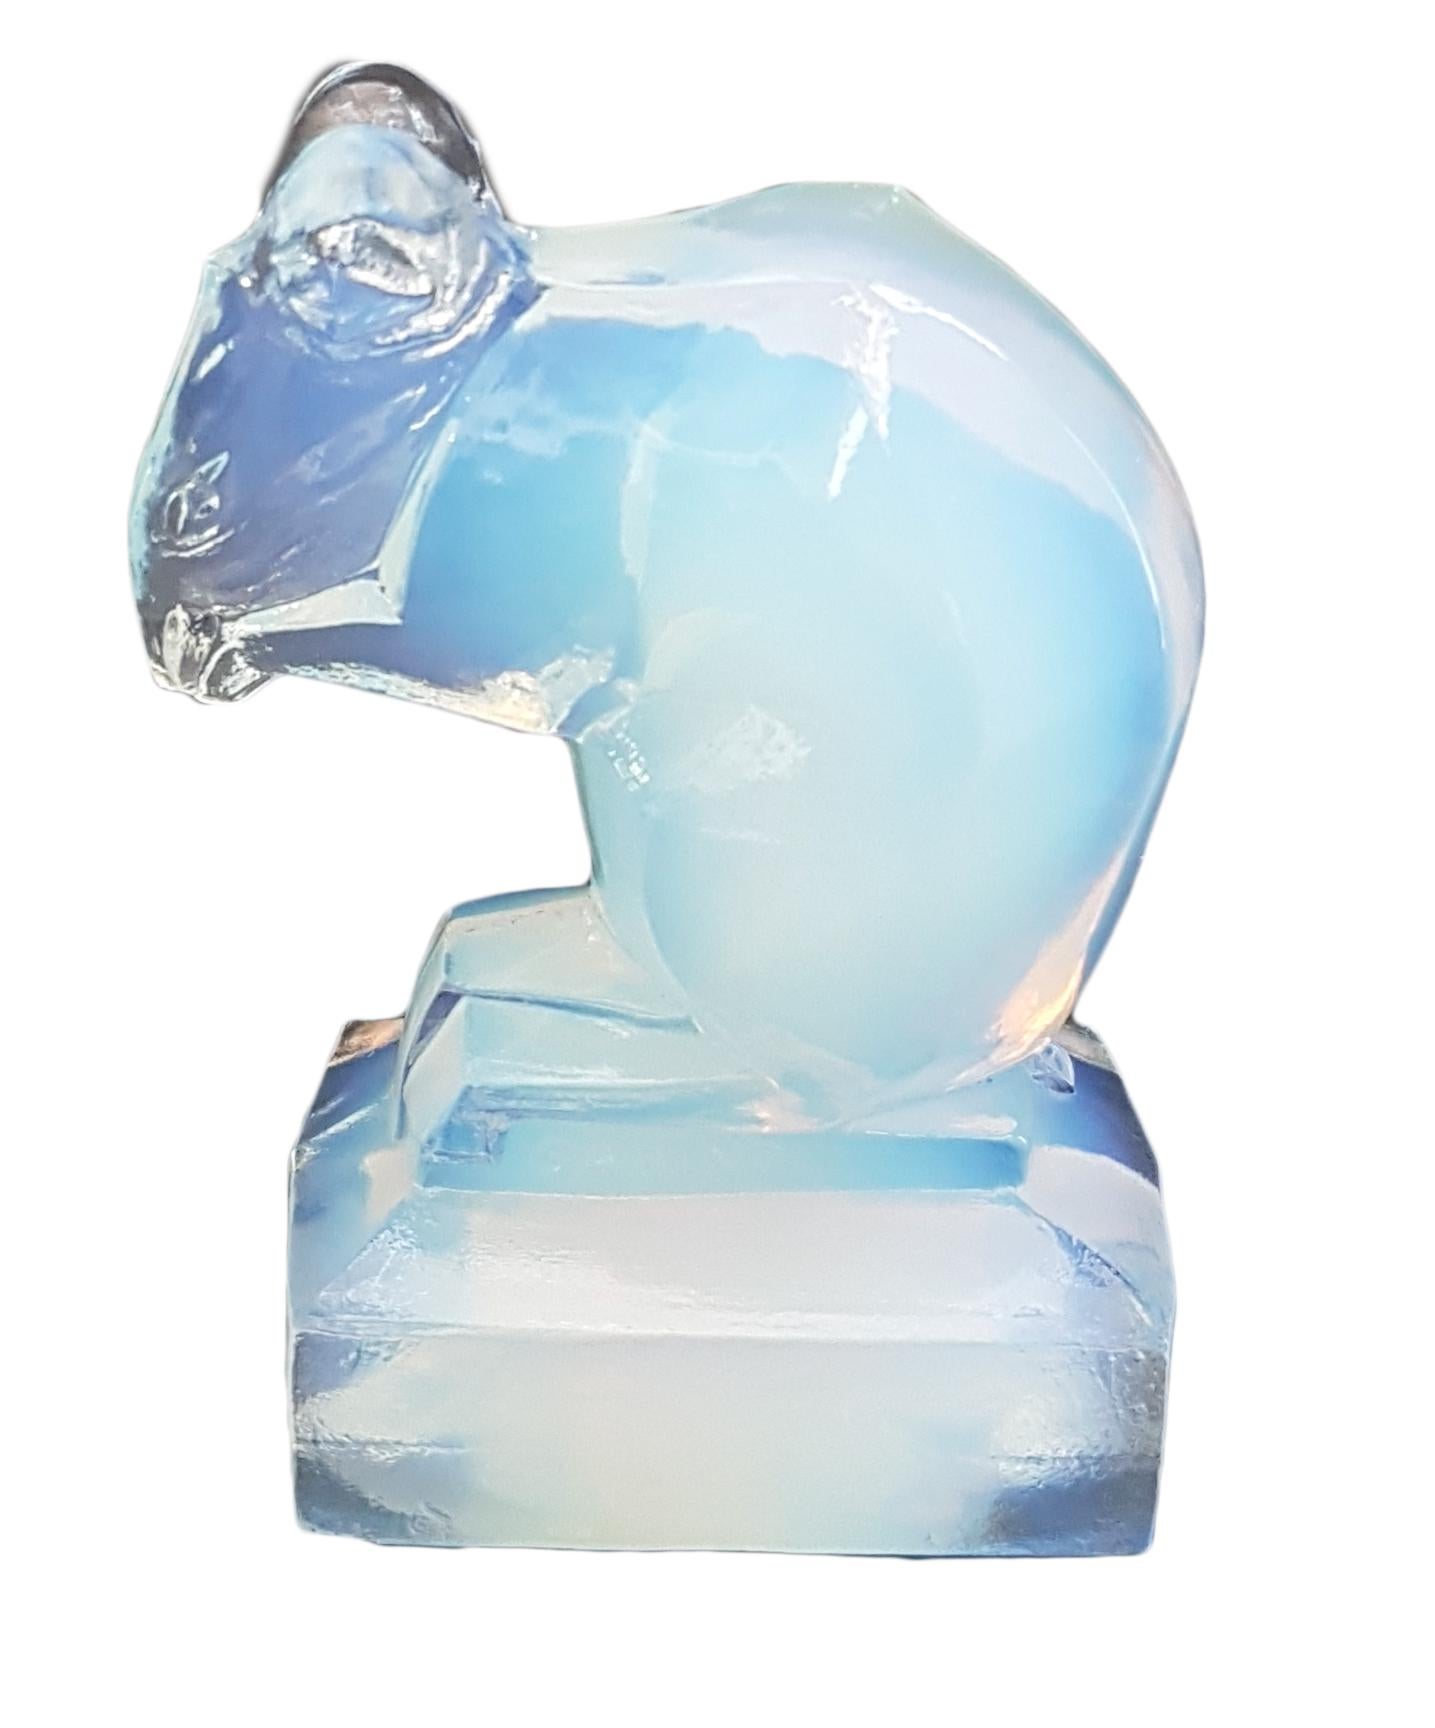 Opaleszierendes geformtes Glas, das von Murano-Herstellern hergestellt wurde. Markt 